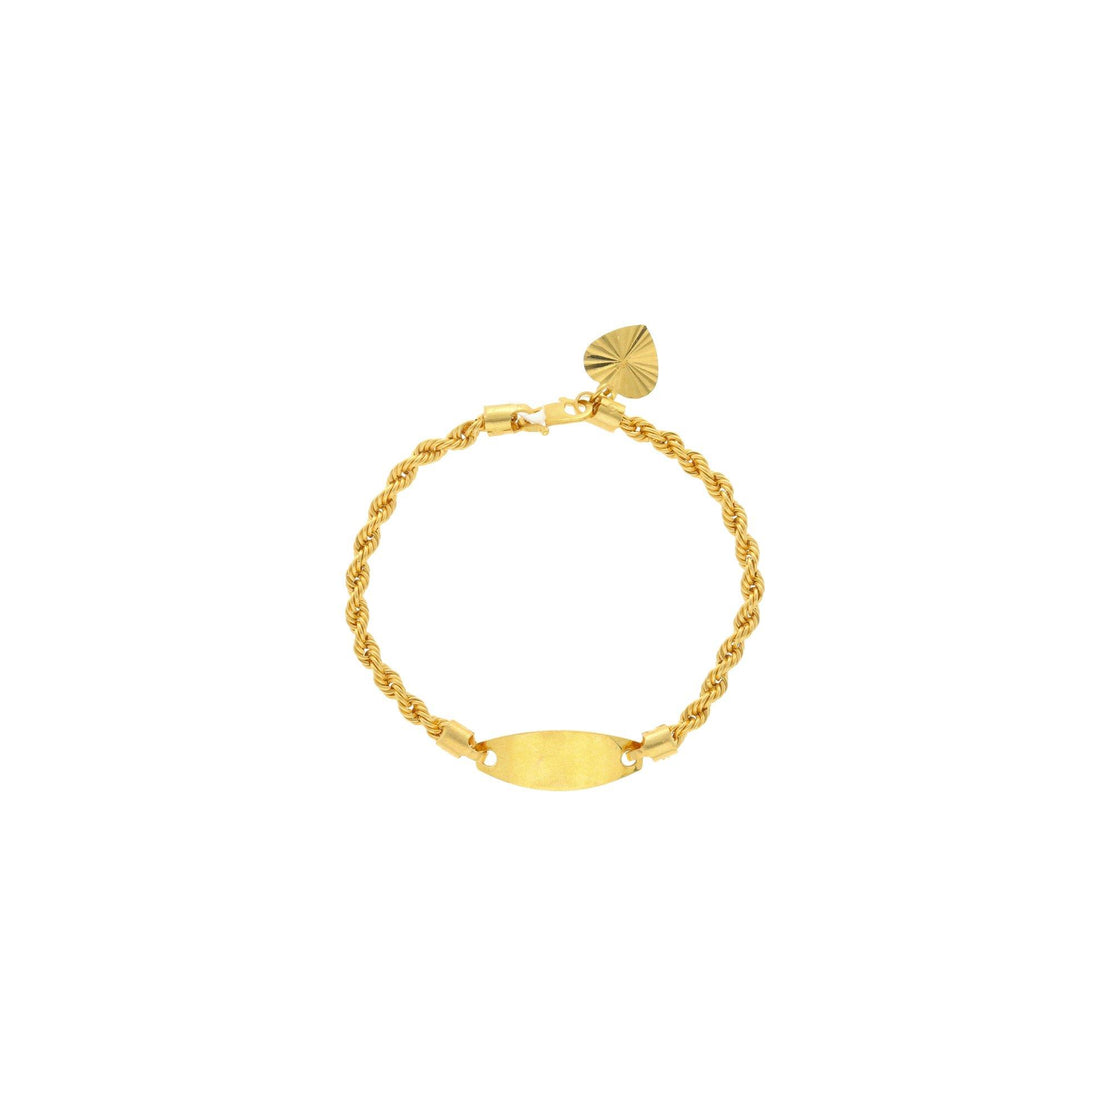 Buy Heart&bell Gold Charm Bracelet,beaded Link Chain Bracelet,baht Chain 22K  24K Yellow Gold Plated,thailand Gold Bracelet,birthday Gift for Her Online  in India - Etsy